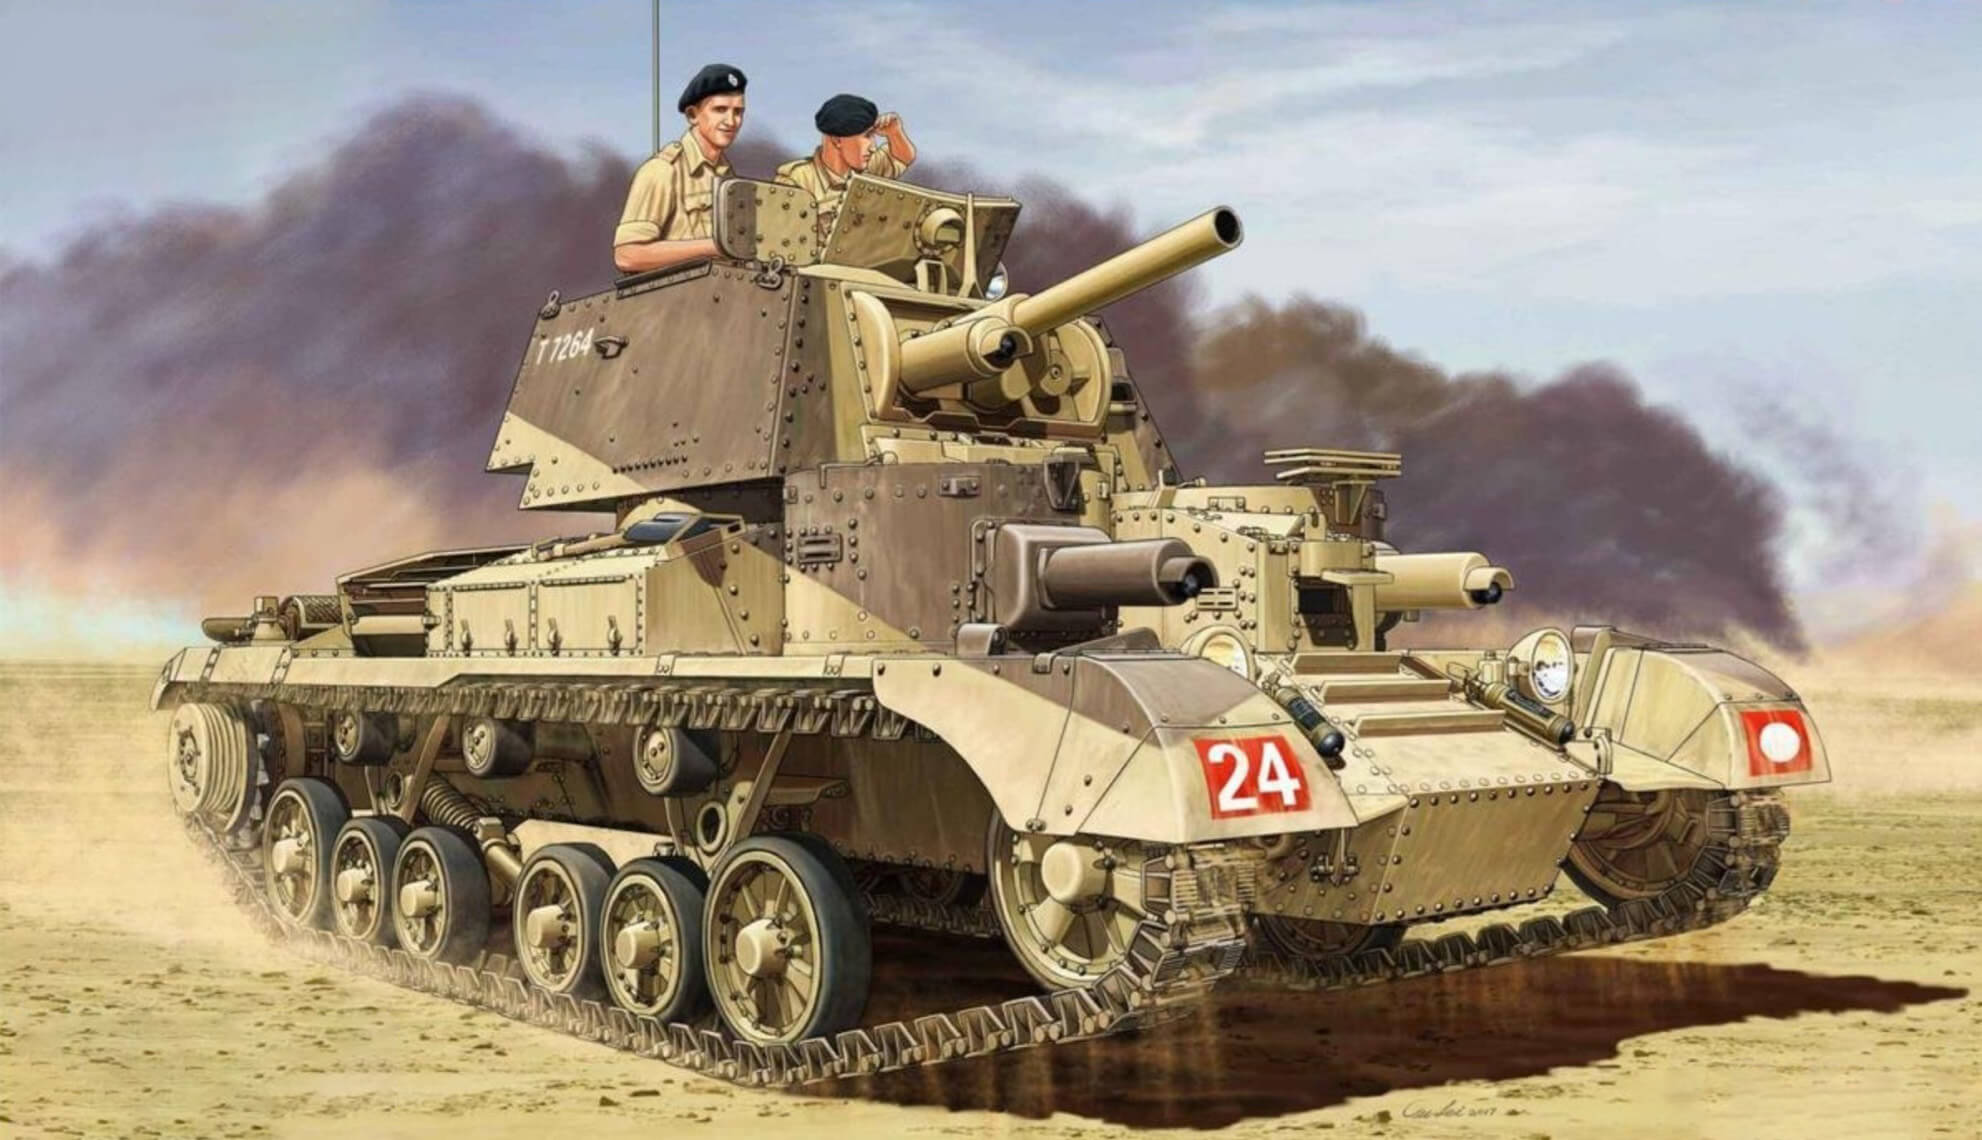 Крейсерский танк огневой поддержки Mk. ICS, вооруженный 3,7-дюймовой гаубицей вместо 2-фунтовой пушки